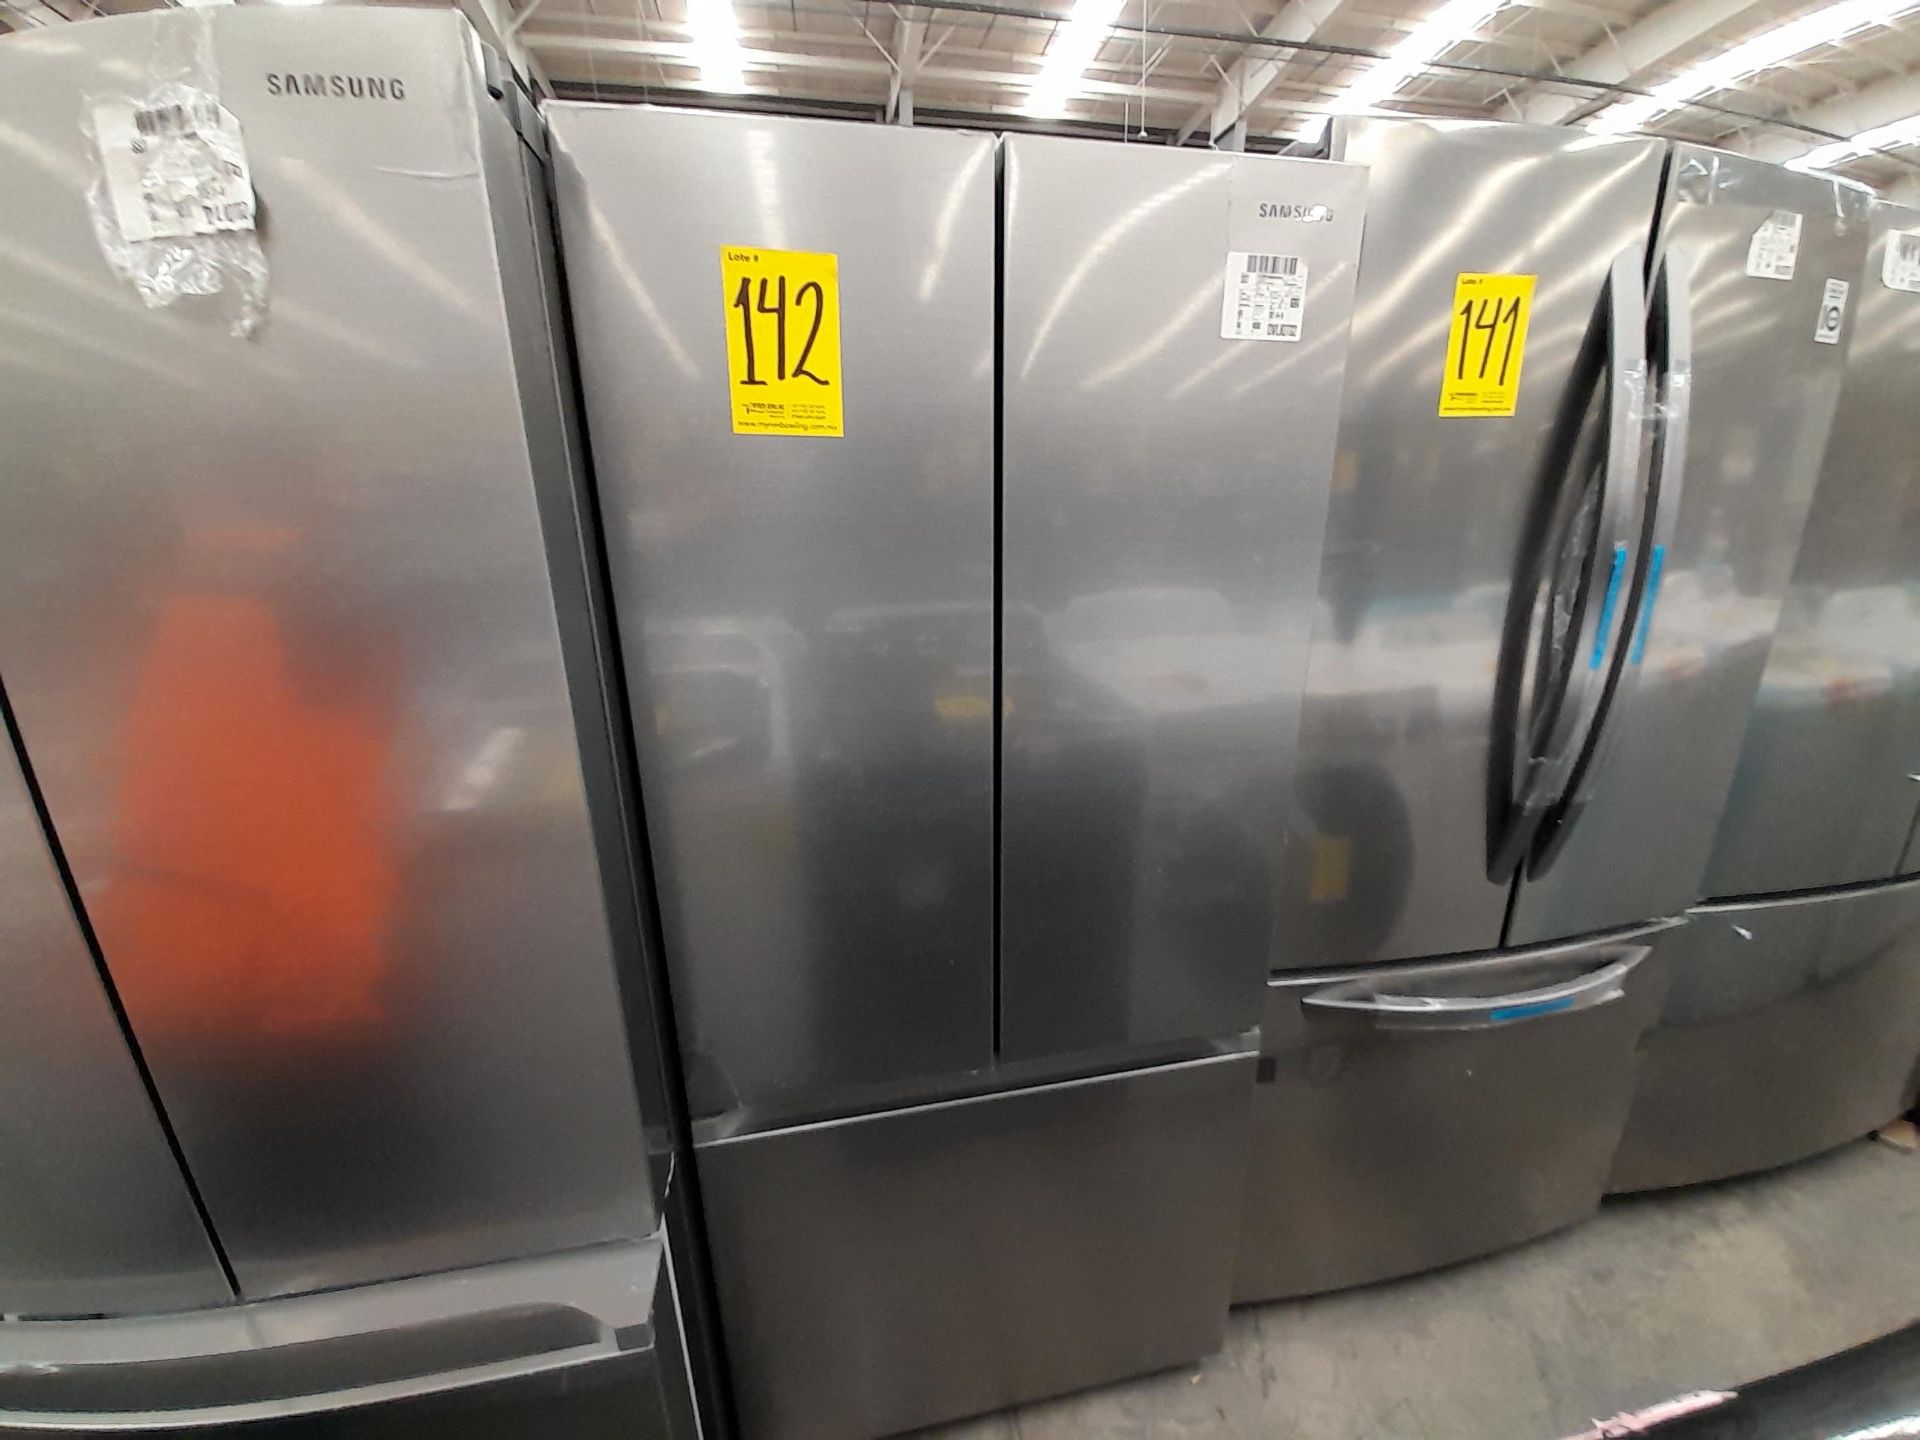 (Equipo nuevo) 1 Refrigerador Marca SAMSUNG, Modelo RF22A4010S9, Serie 00665B, Color GRIS. (Nuevo,